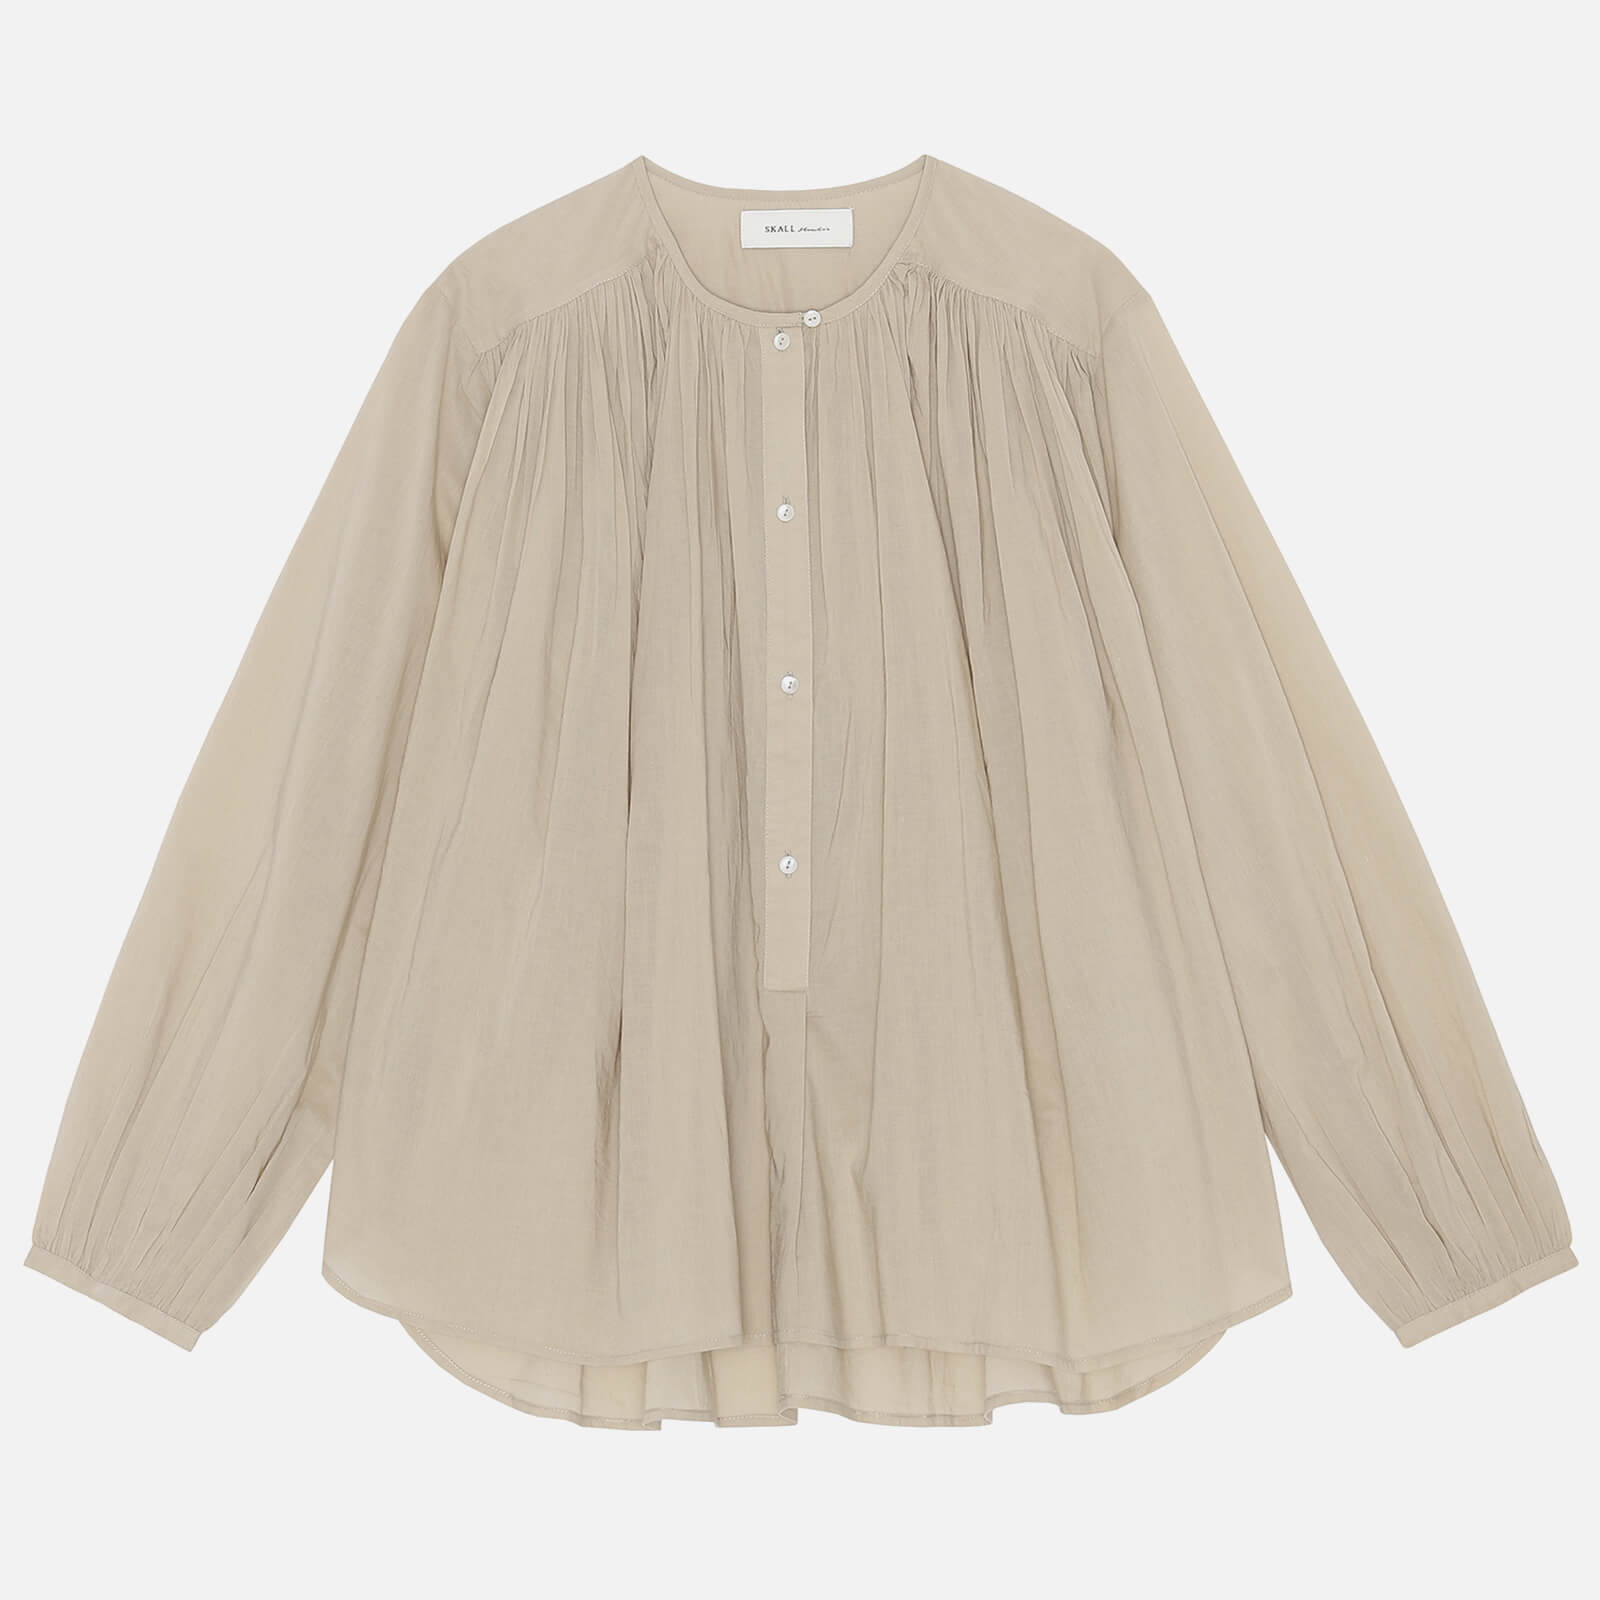 skall studio women's shiro blouse - desert sand - eu 36/uk 8